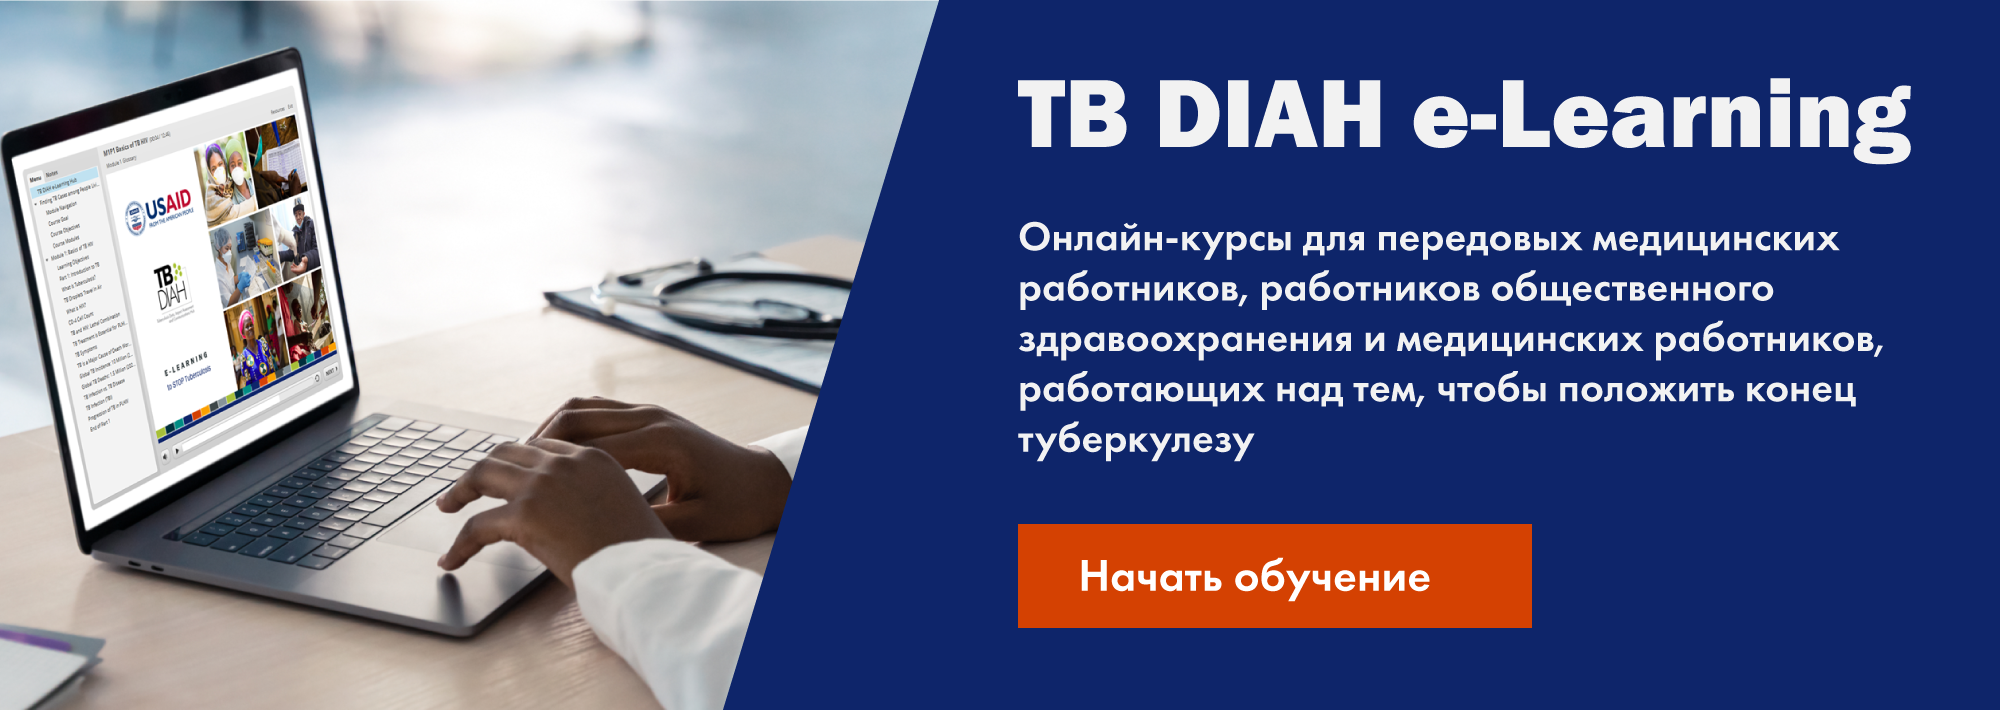 TB DIAH e-Learning Онлайн-курсы для передовых медицинских работников, работников общественного здравоохранения и медицинских 